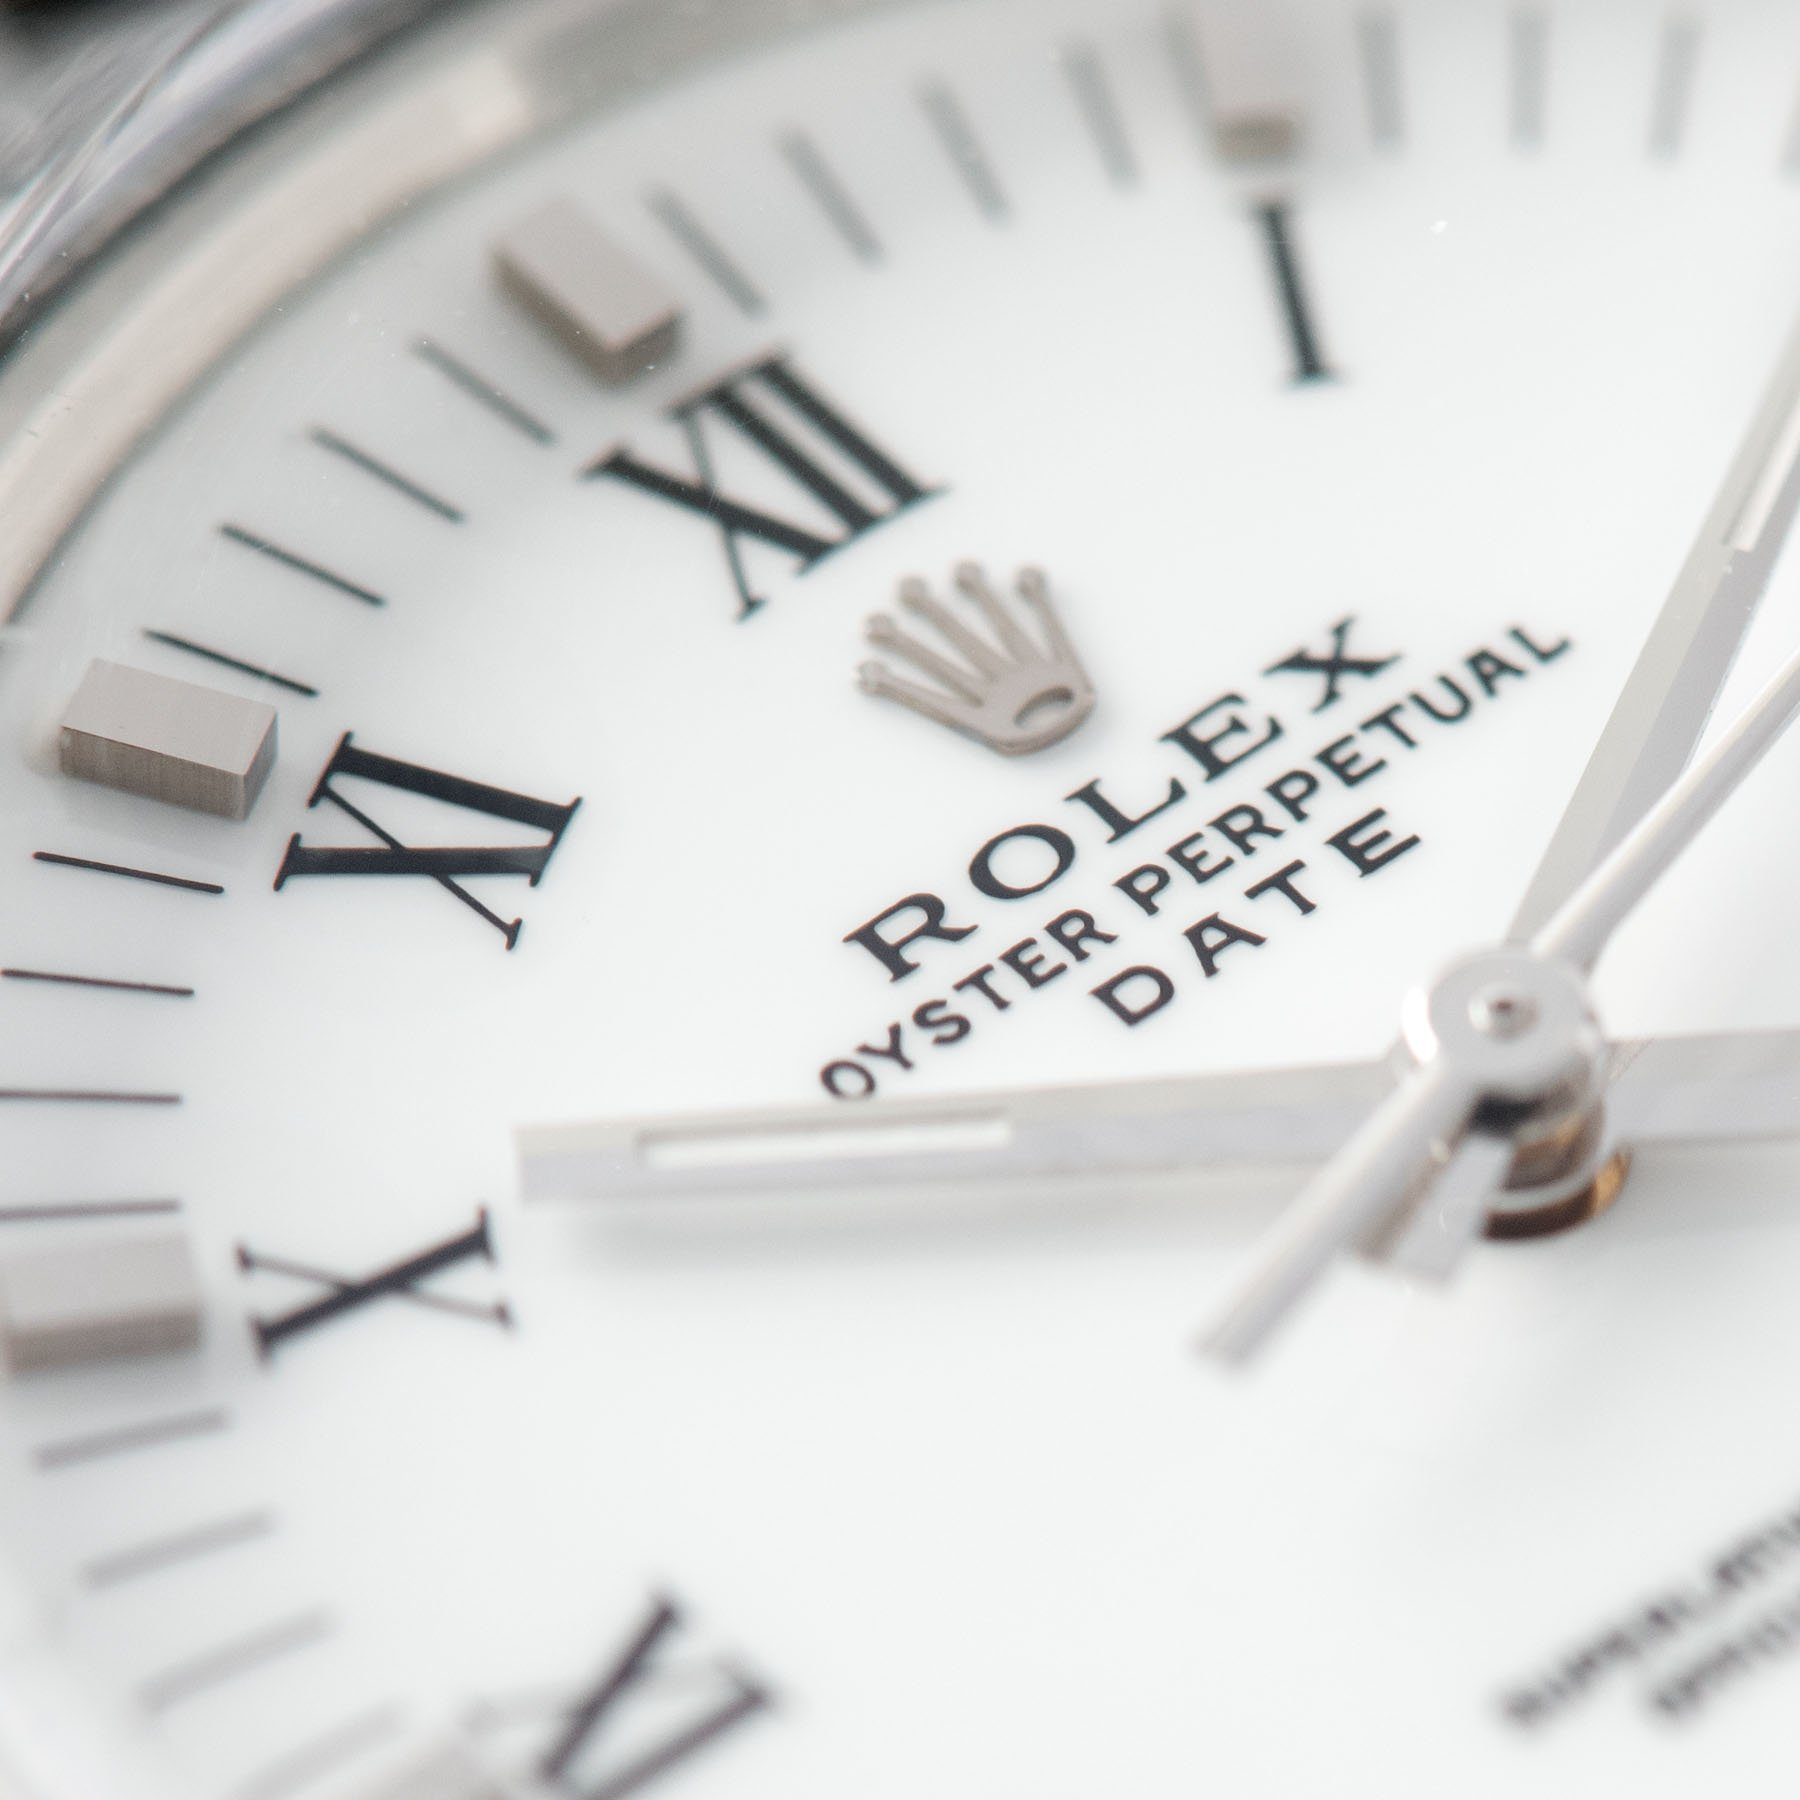 Rolex Oyster Perpetual Date Ref 15000